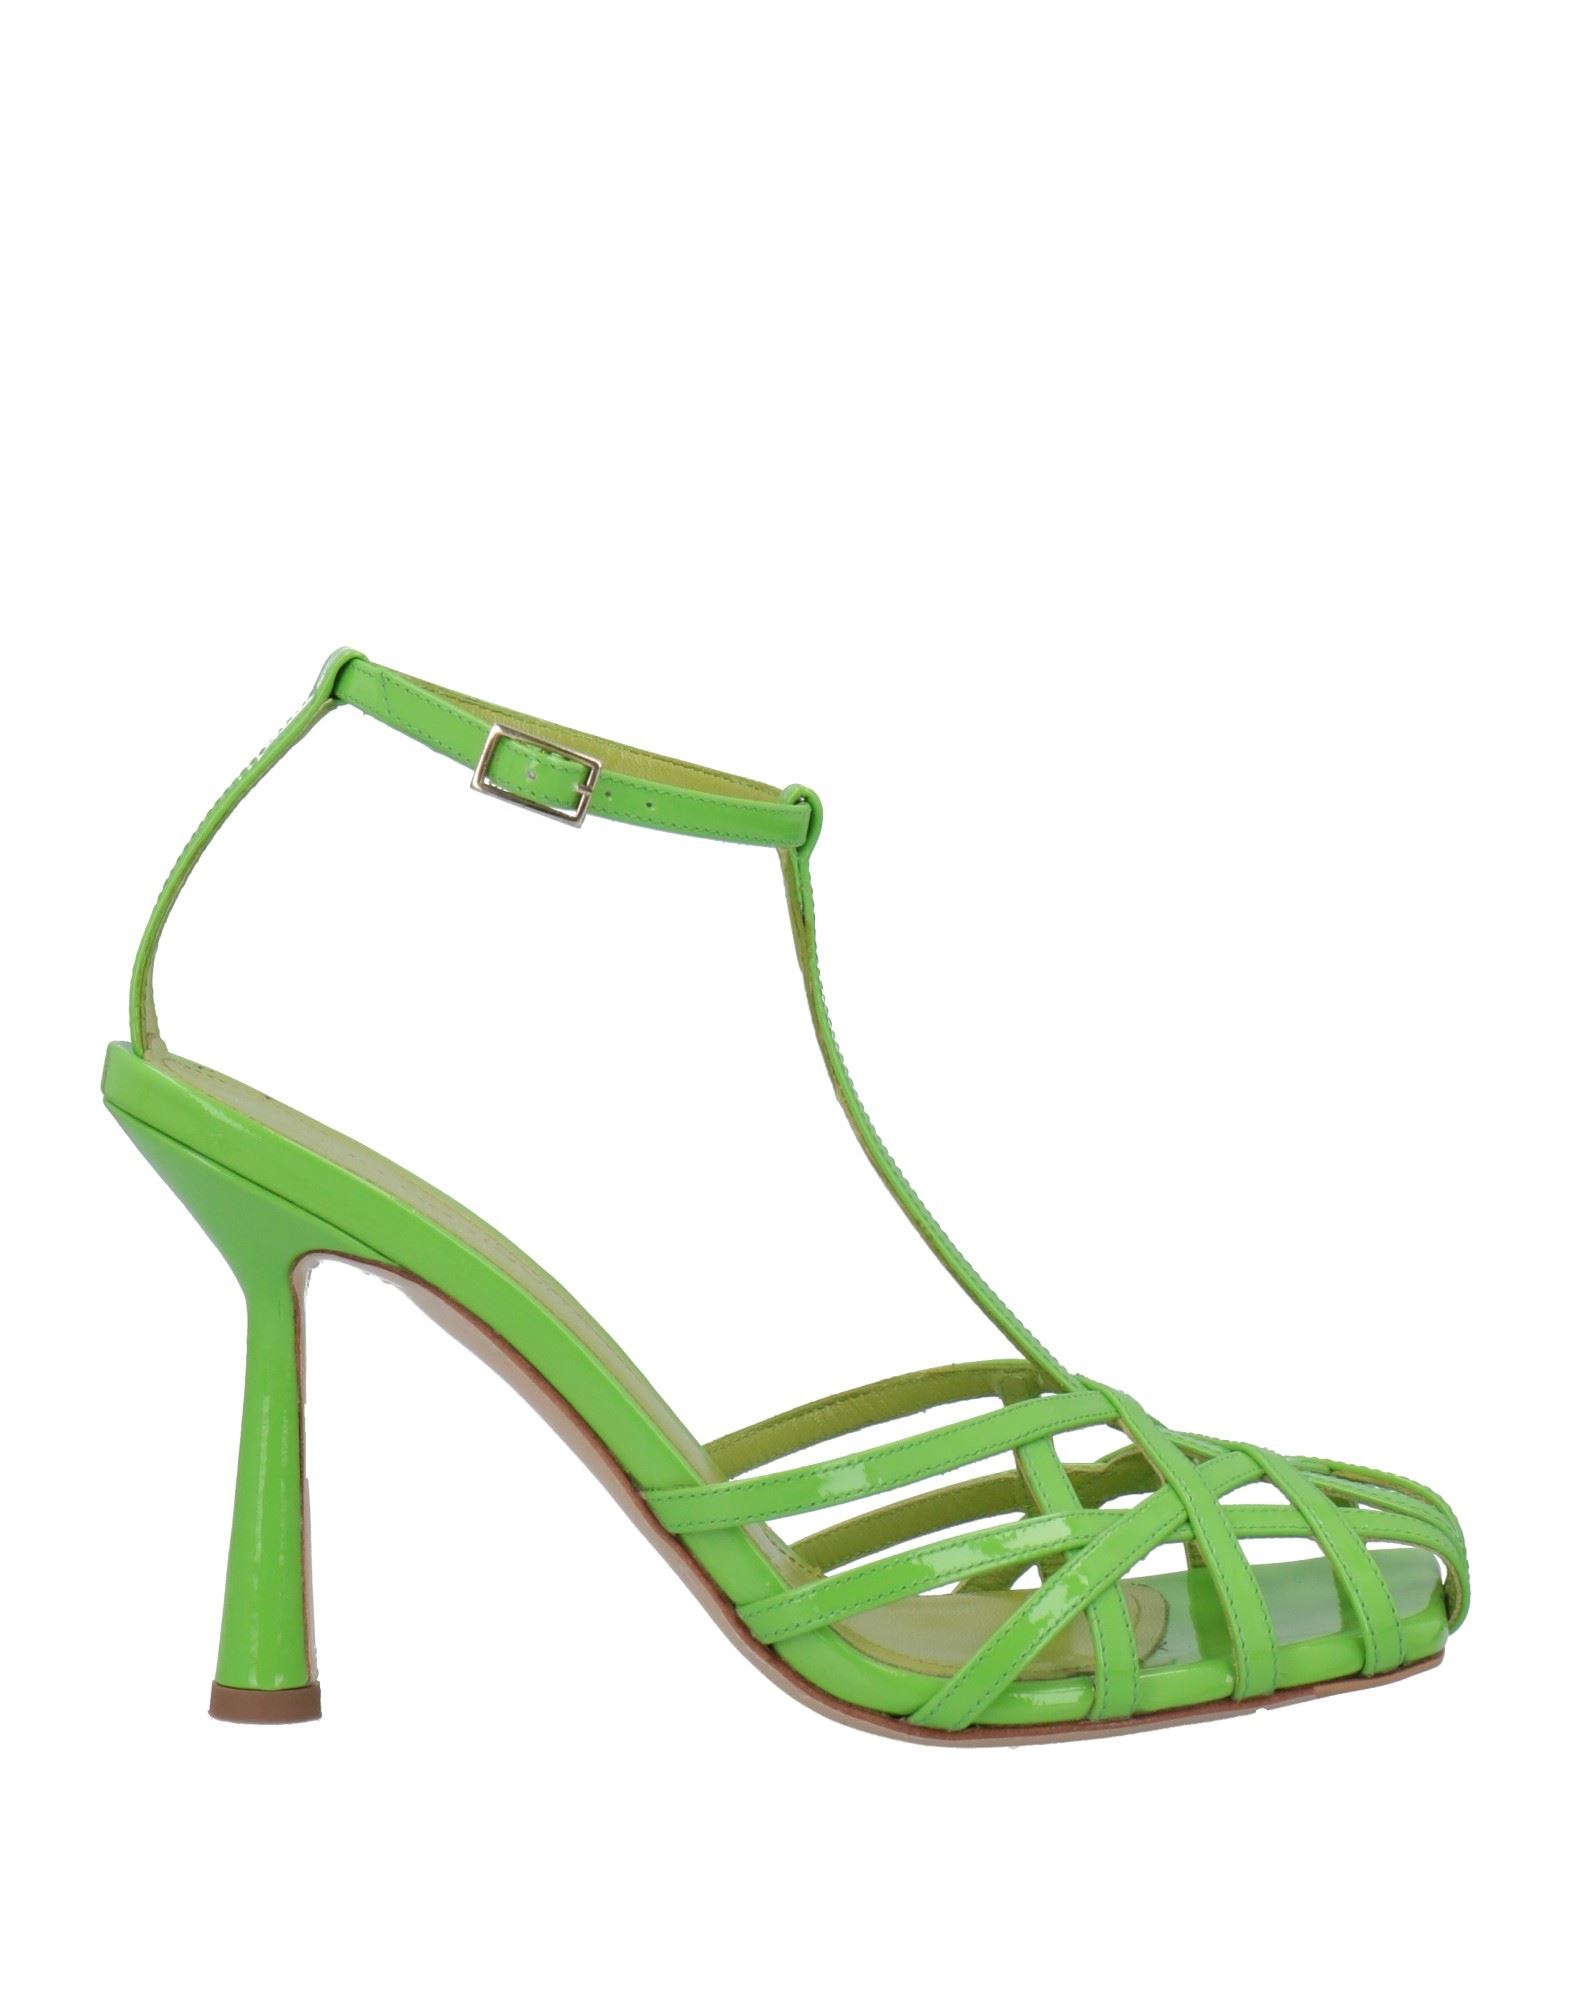 Shop Aldo Castagna Woman Sandals Green Size 6 Soft Leather